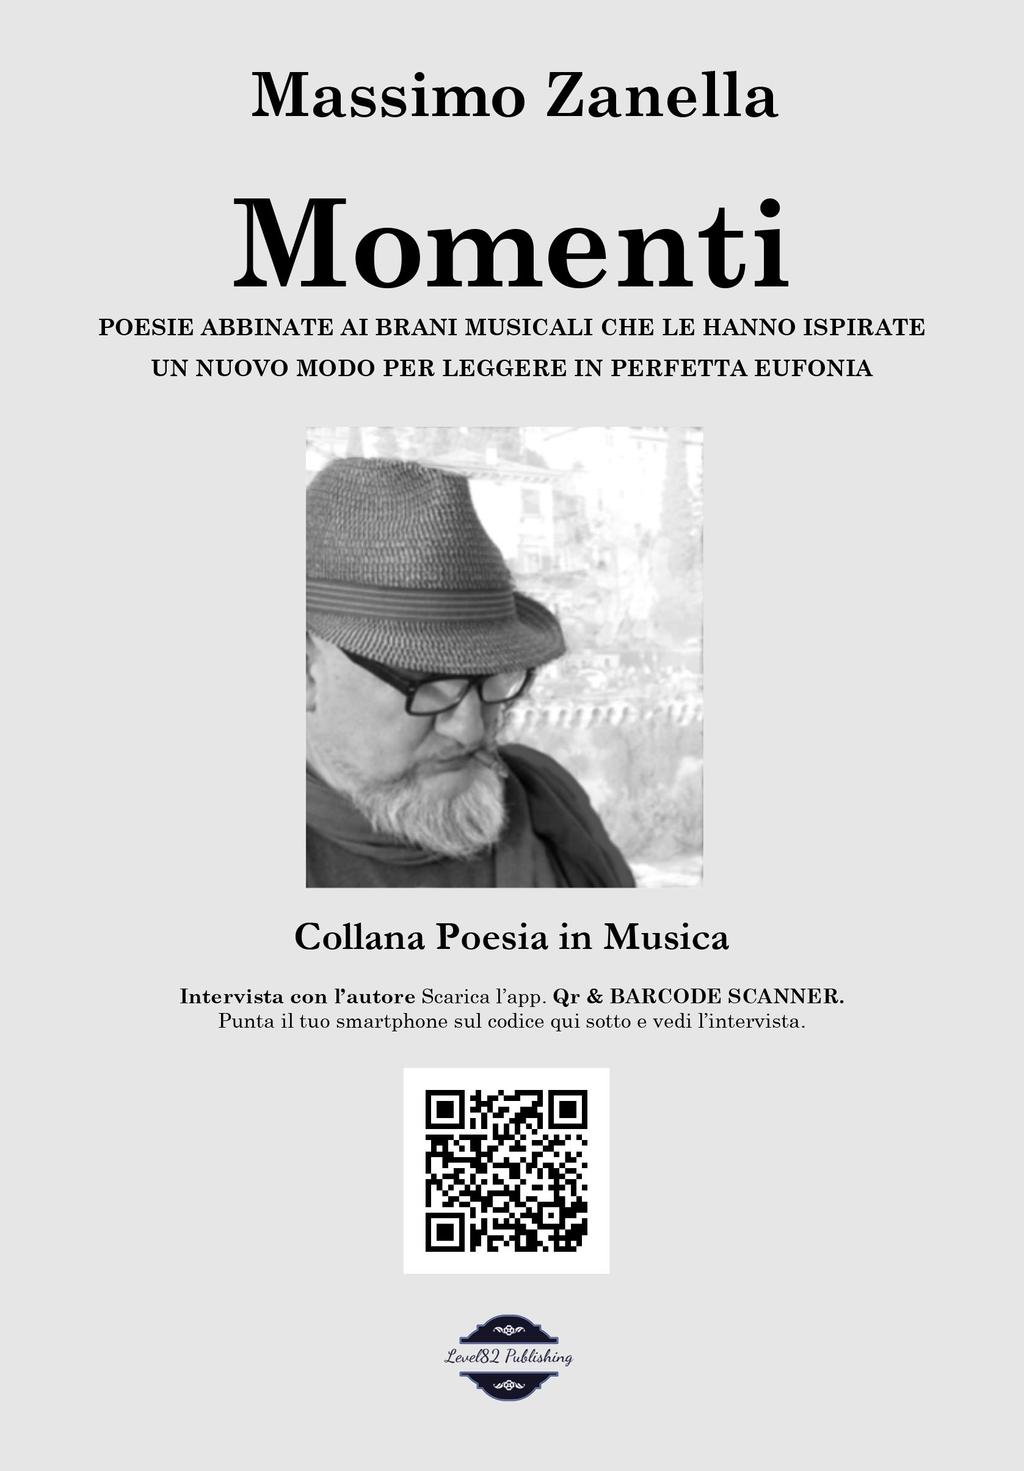 978-39-504333-0-2 POESIA MOMENTI Poesie abbinate ai brani musicali che le hanno ispirate di Massimo Zanella Poesie abbinate alla musica.